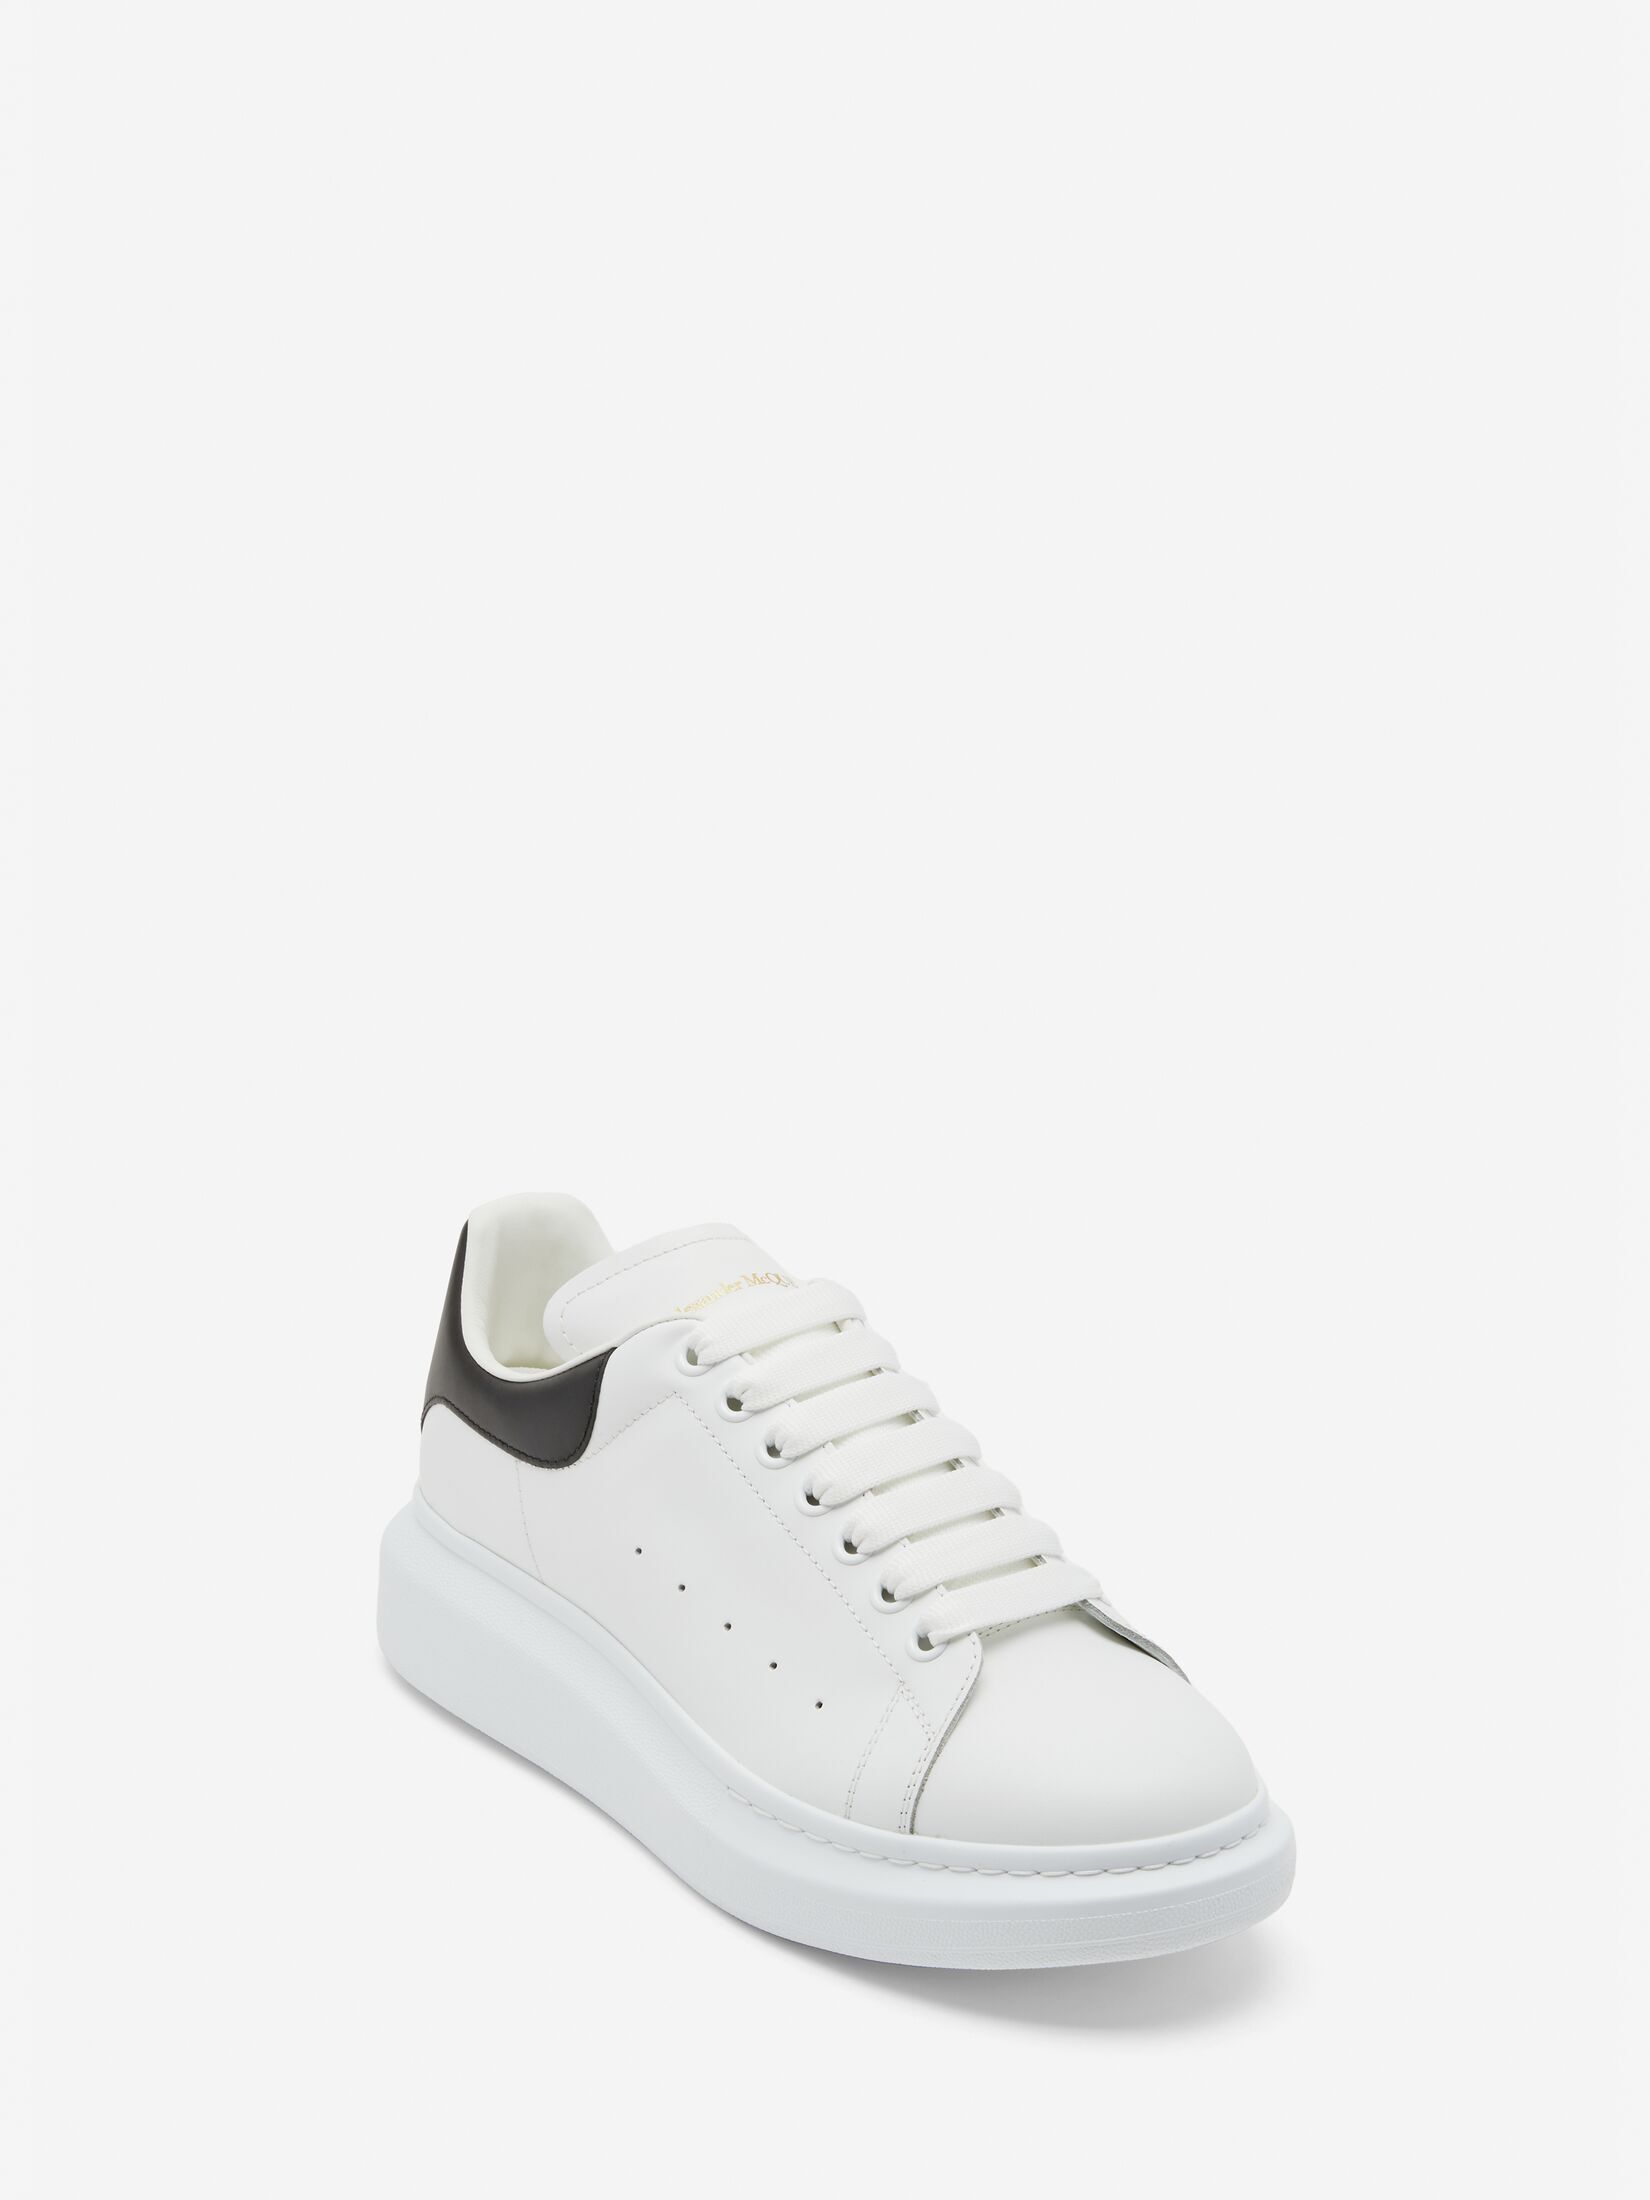 Oversized Sneaker in White/Jet Black